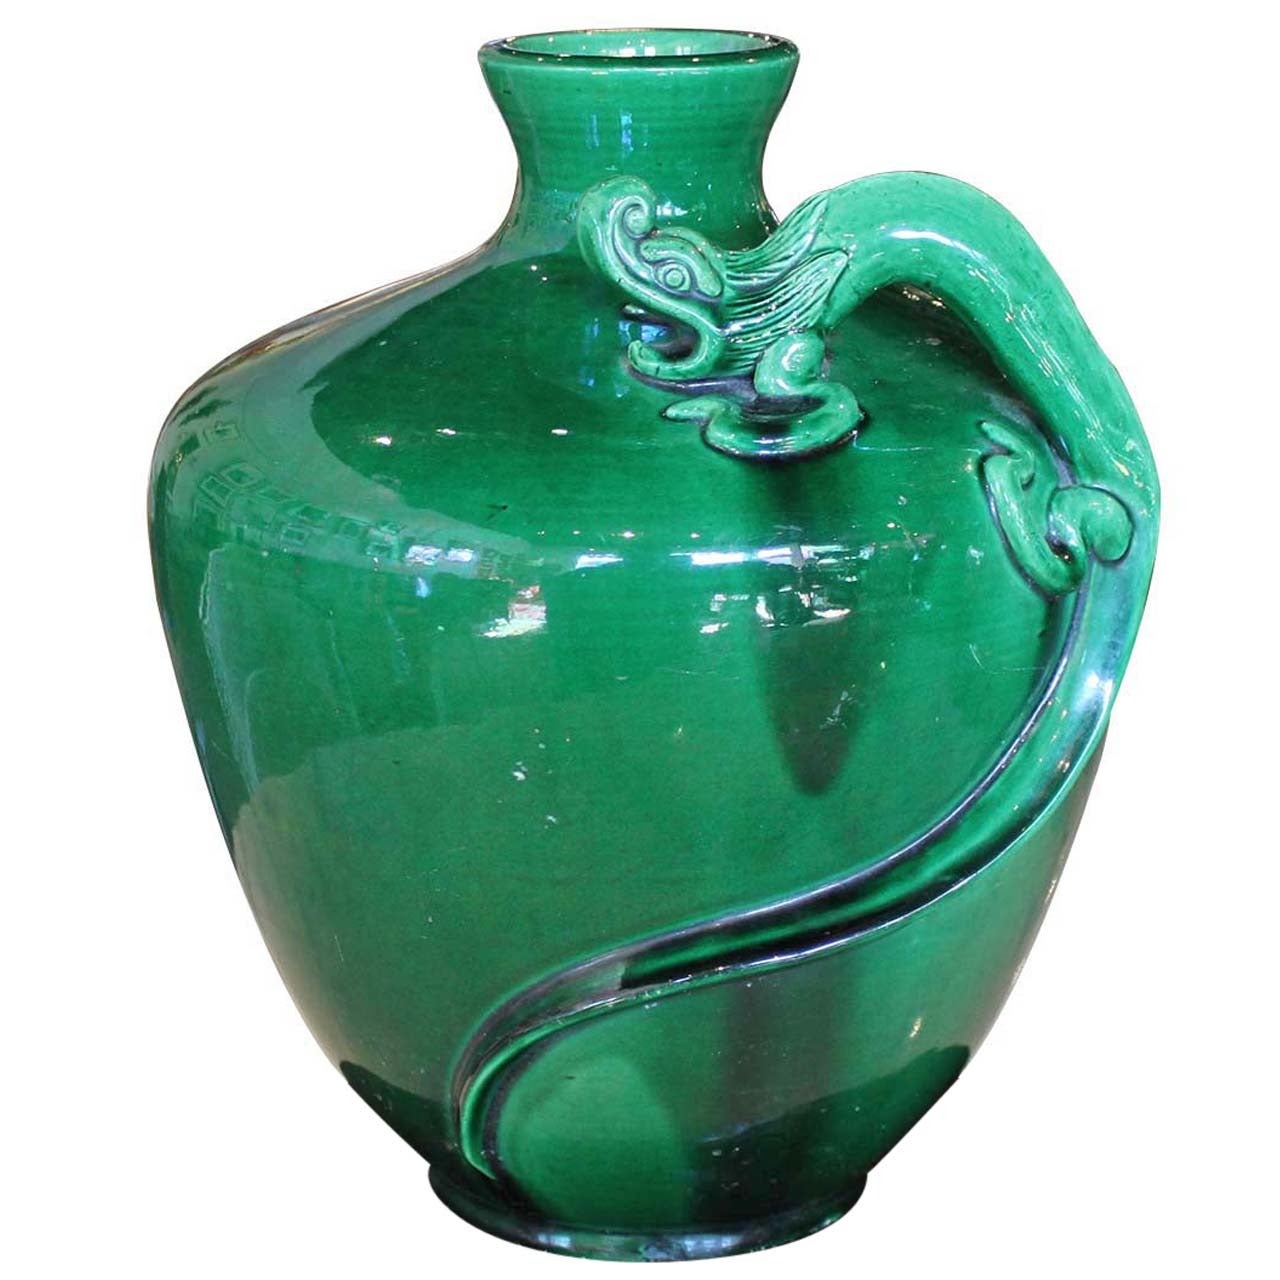 Awaji Ceramic Vase with Dragon